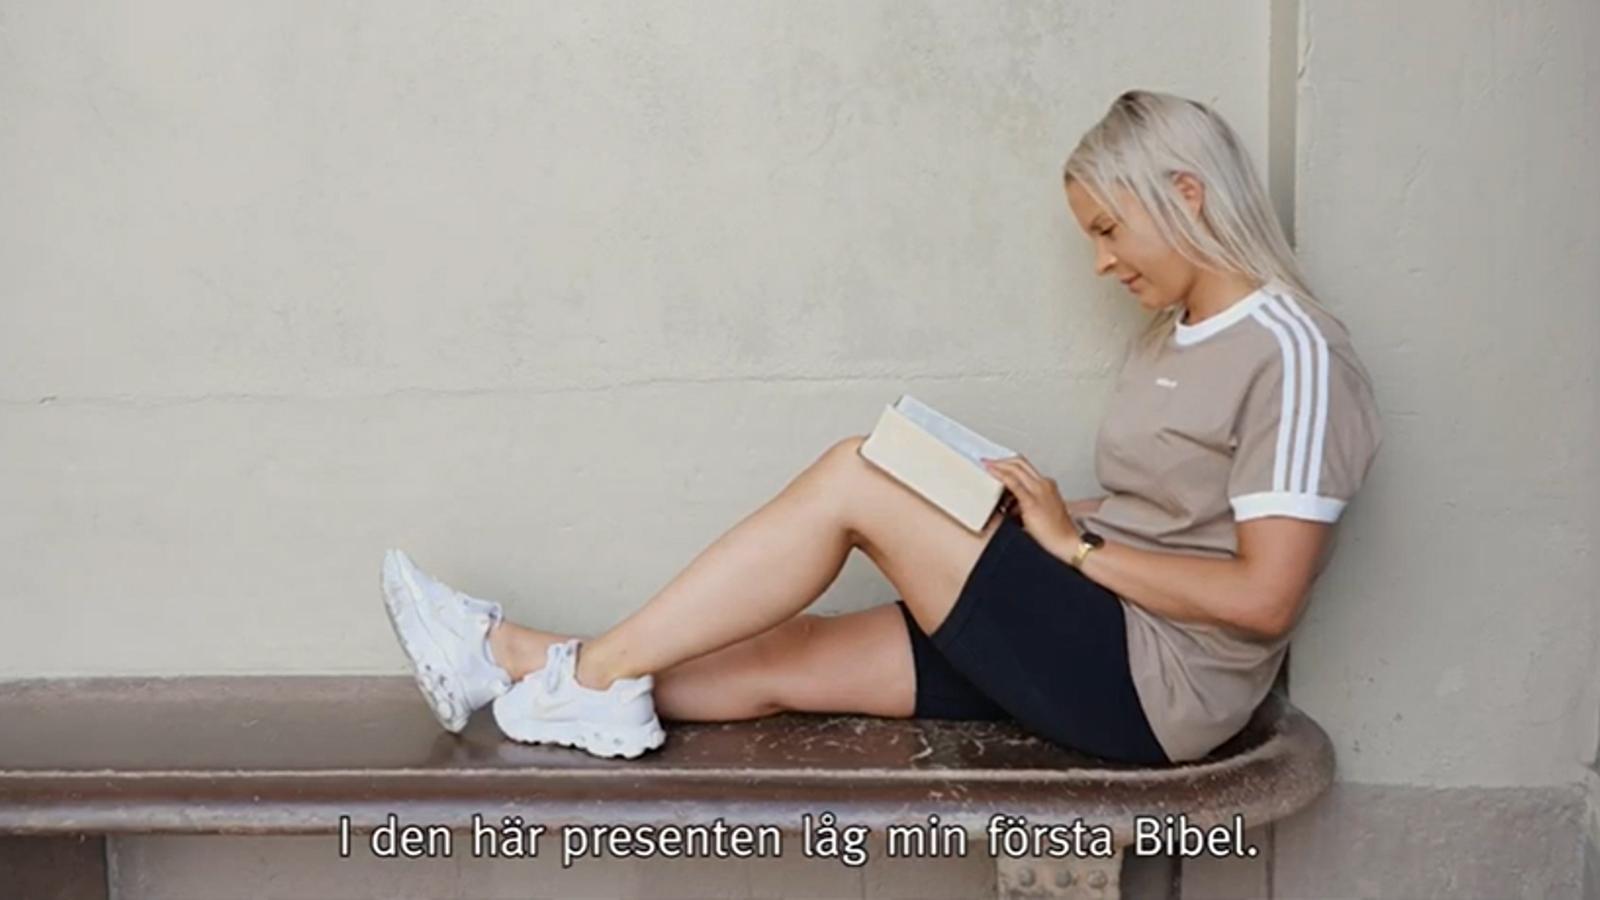 Carolina sitter på en bänk med ryggen lutad mot en vägg. I knät har hon en uppslagen bibel som hon läser i.